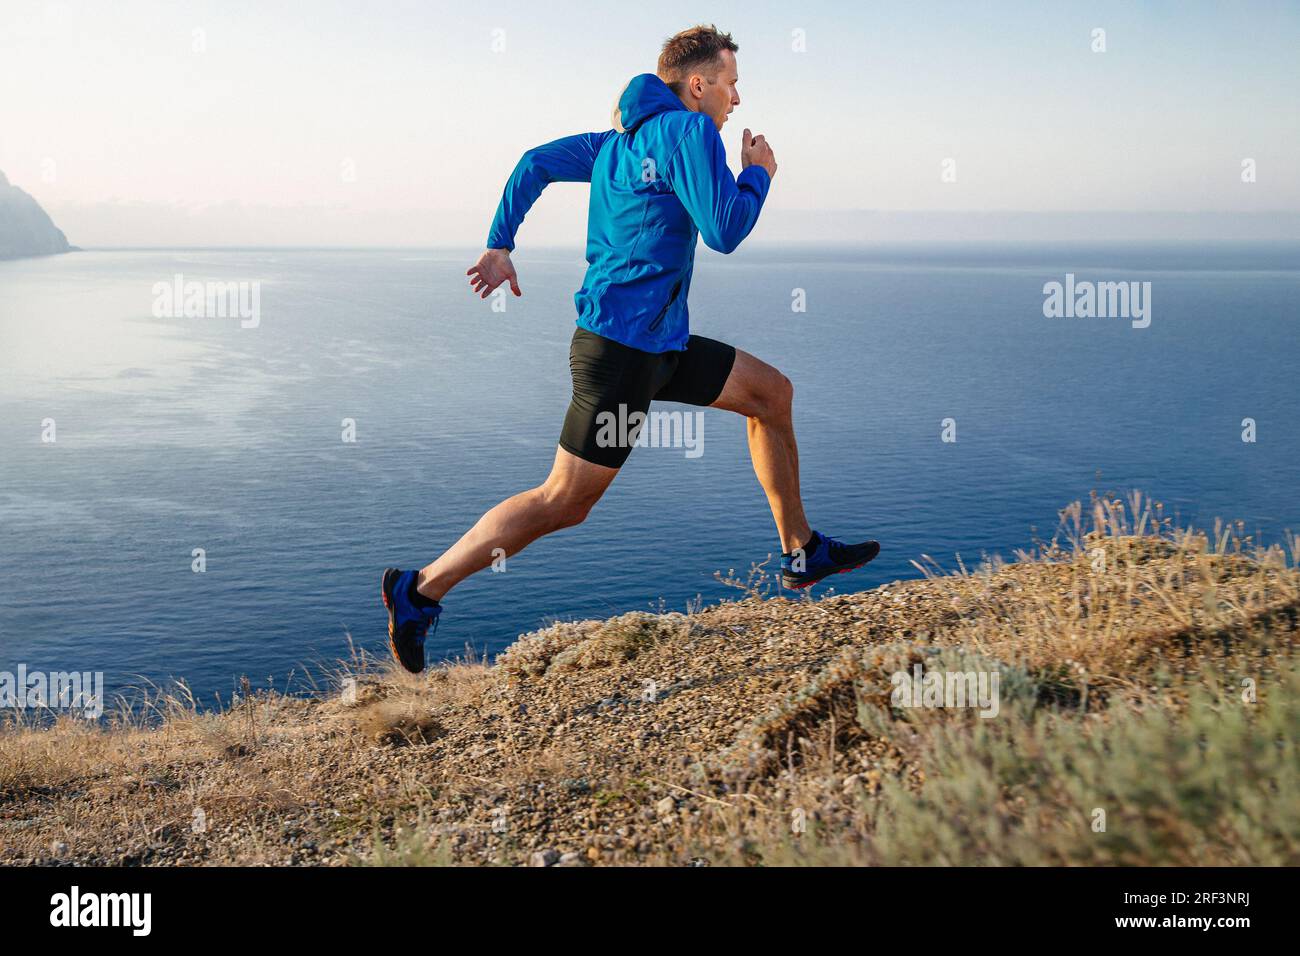 corridore maschile che corre in salita sul bordo con giacca blu e tights neri, sfondo di cielo e mare Foto Stock